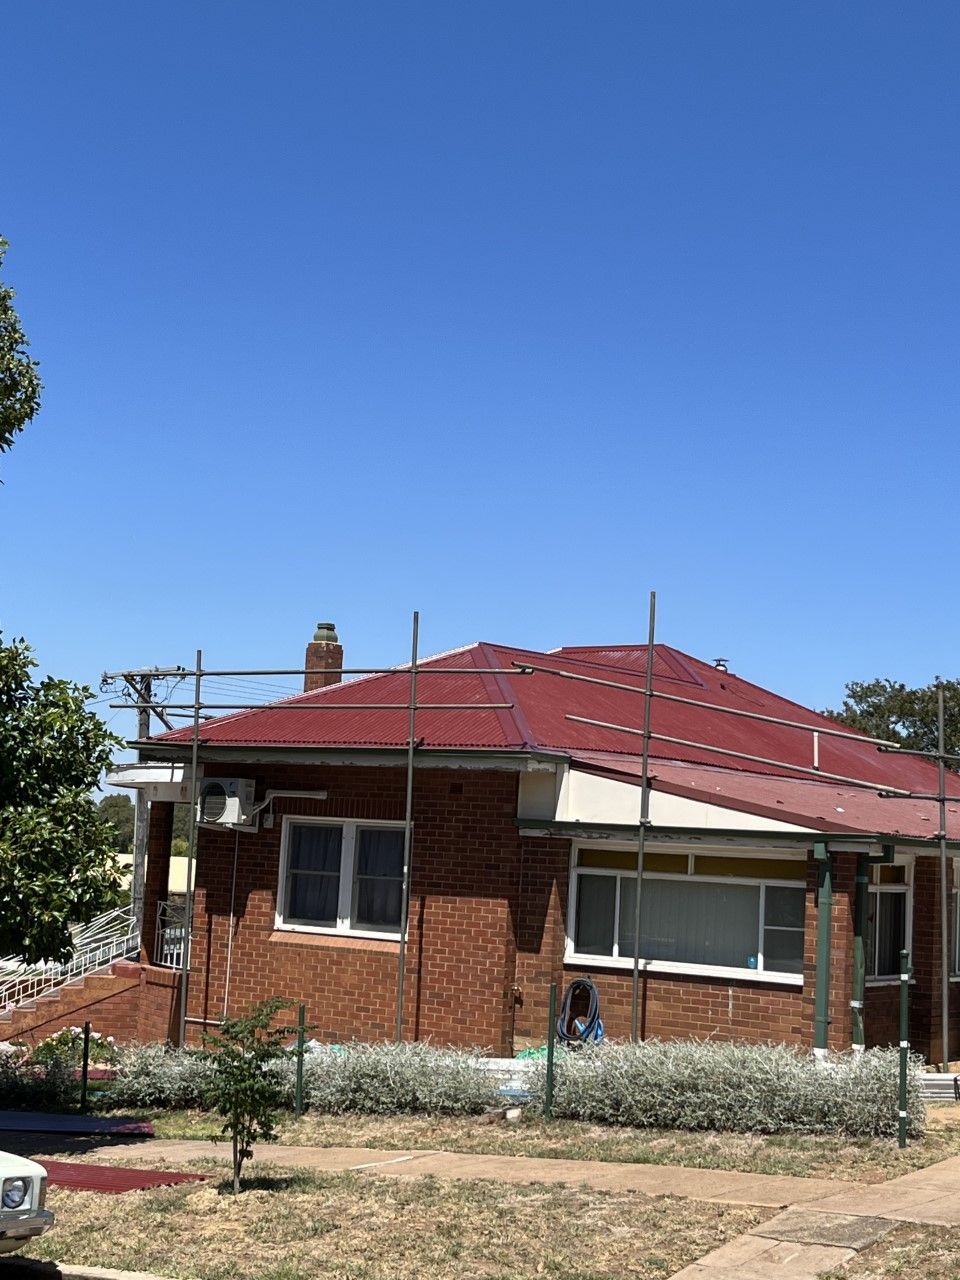 Roof Repair in Progress — Roofer in Orange, NSW